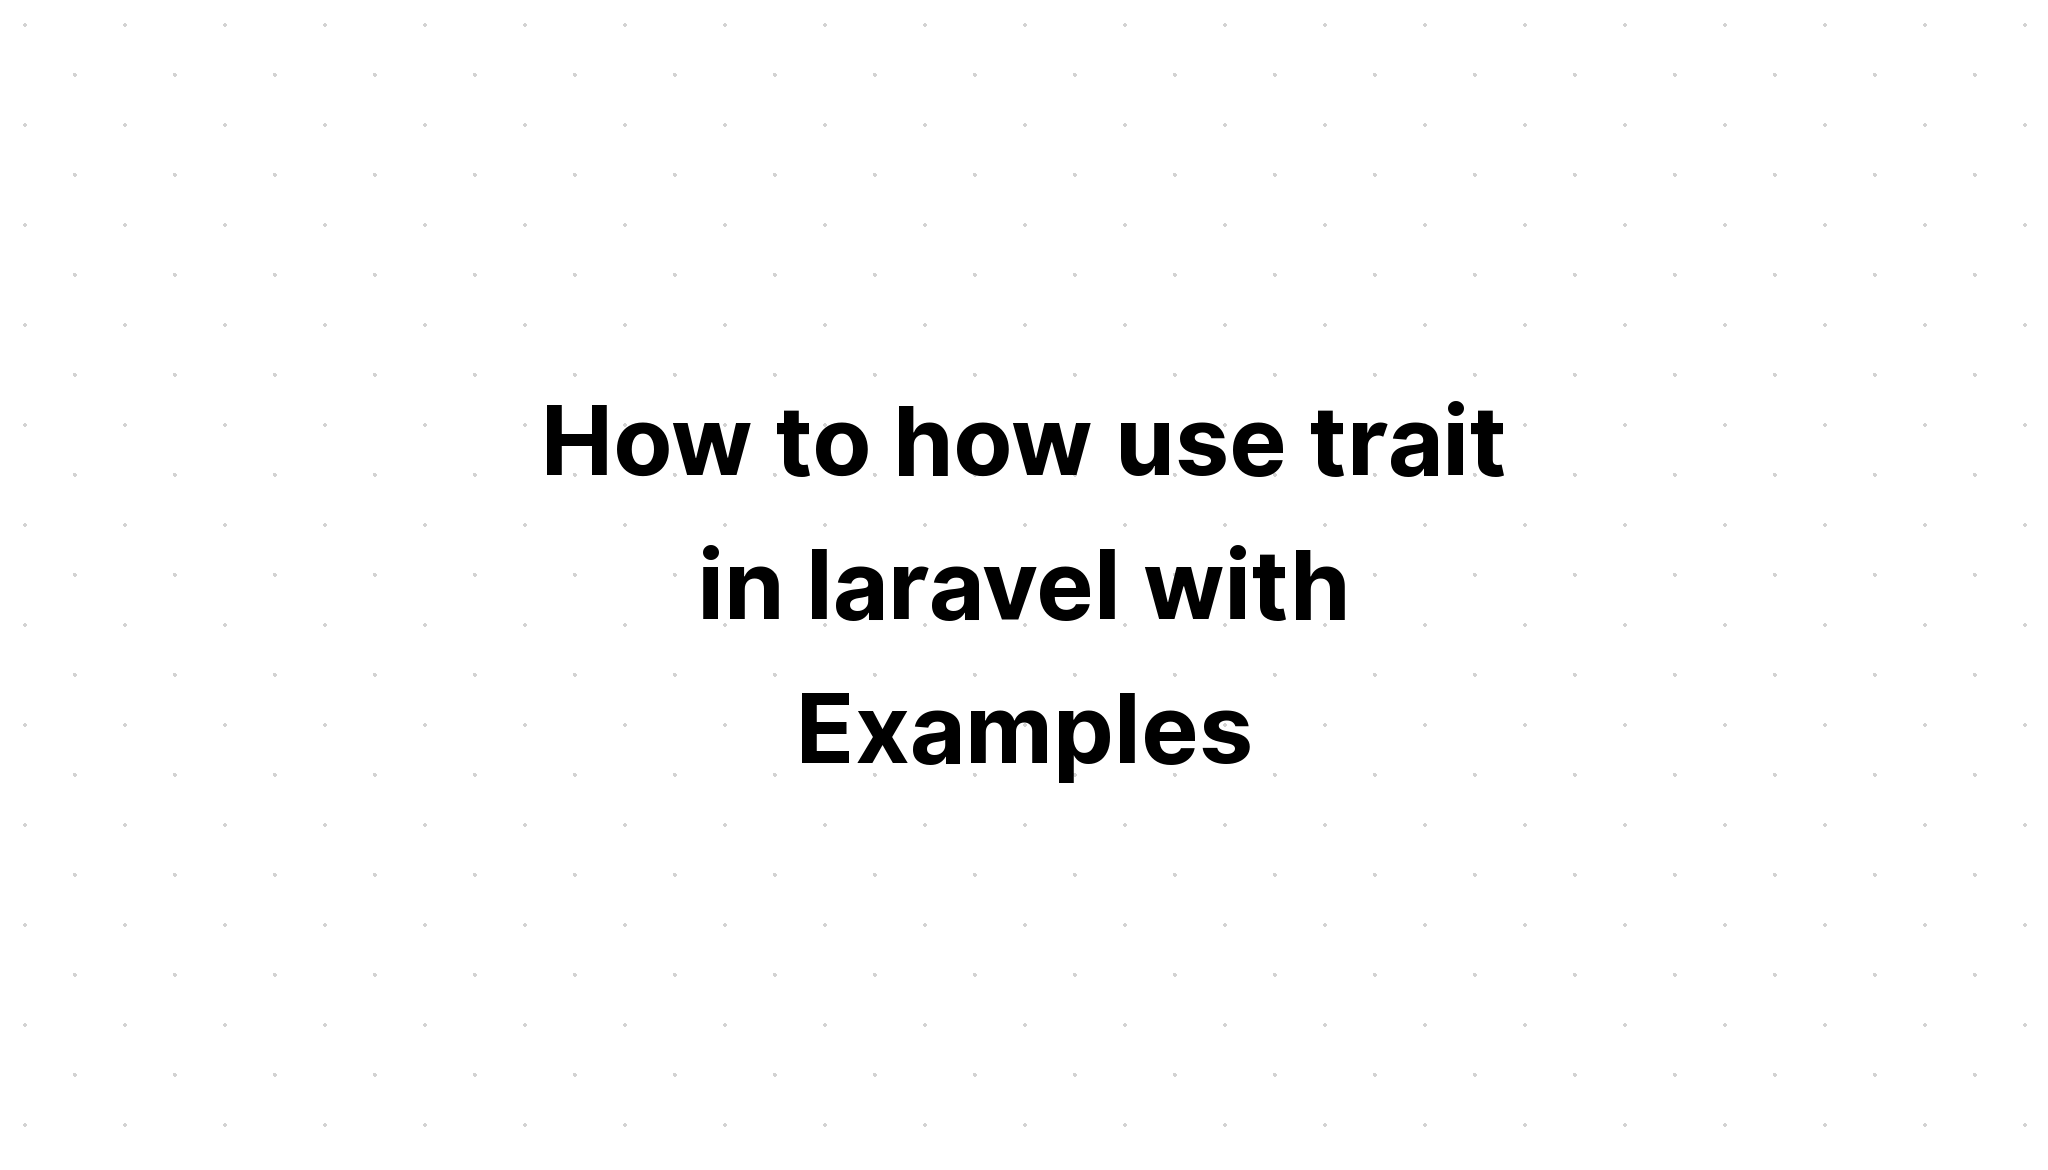 Cách sử dụng trait trong laravel với các ví dụ